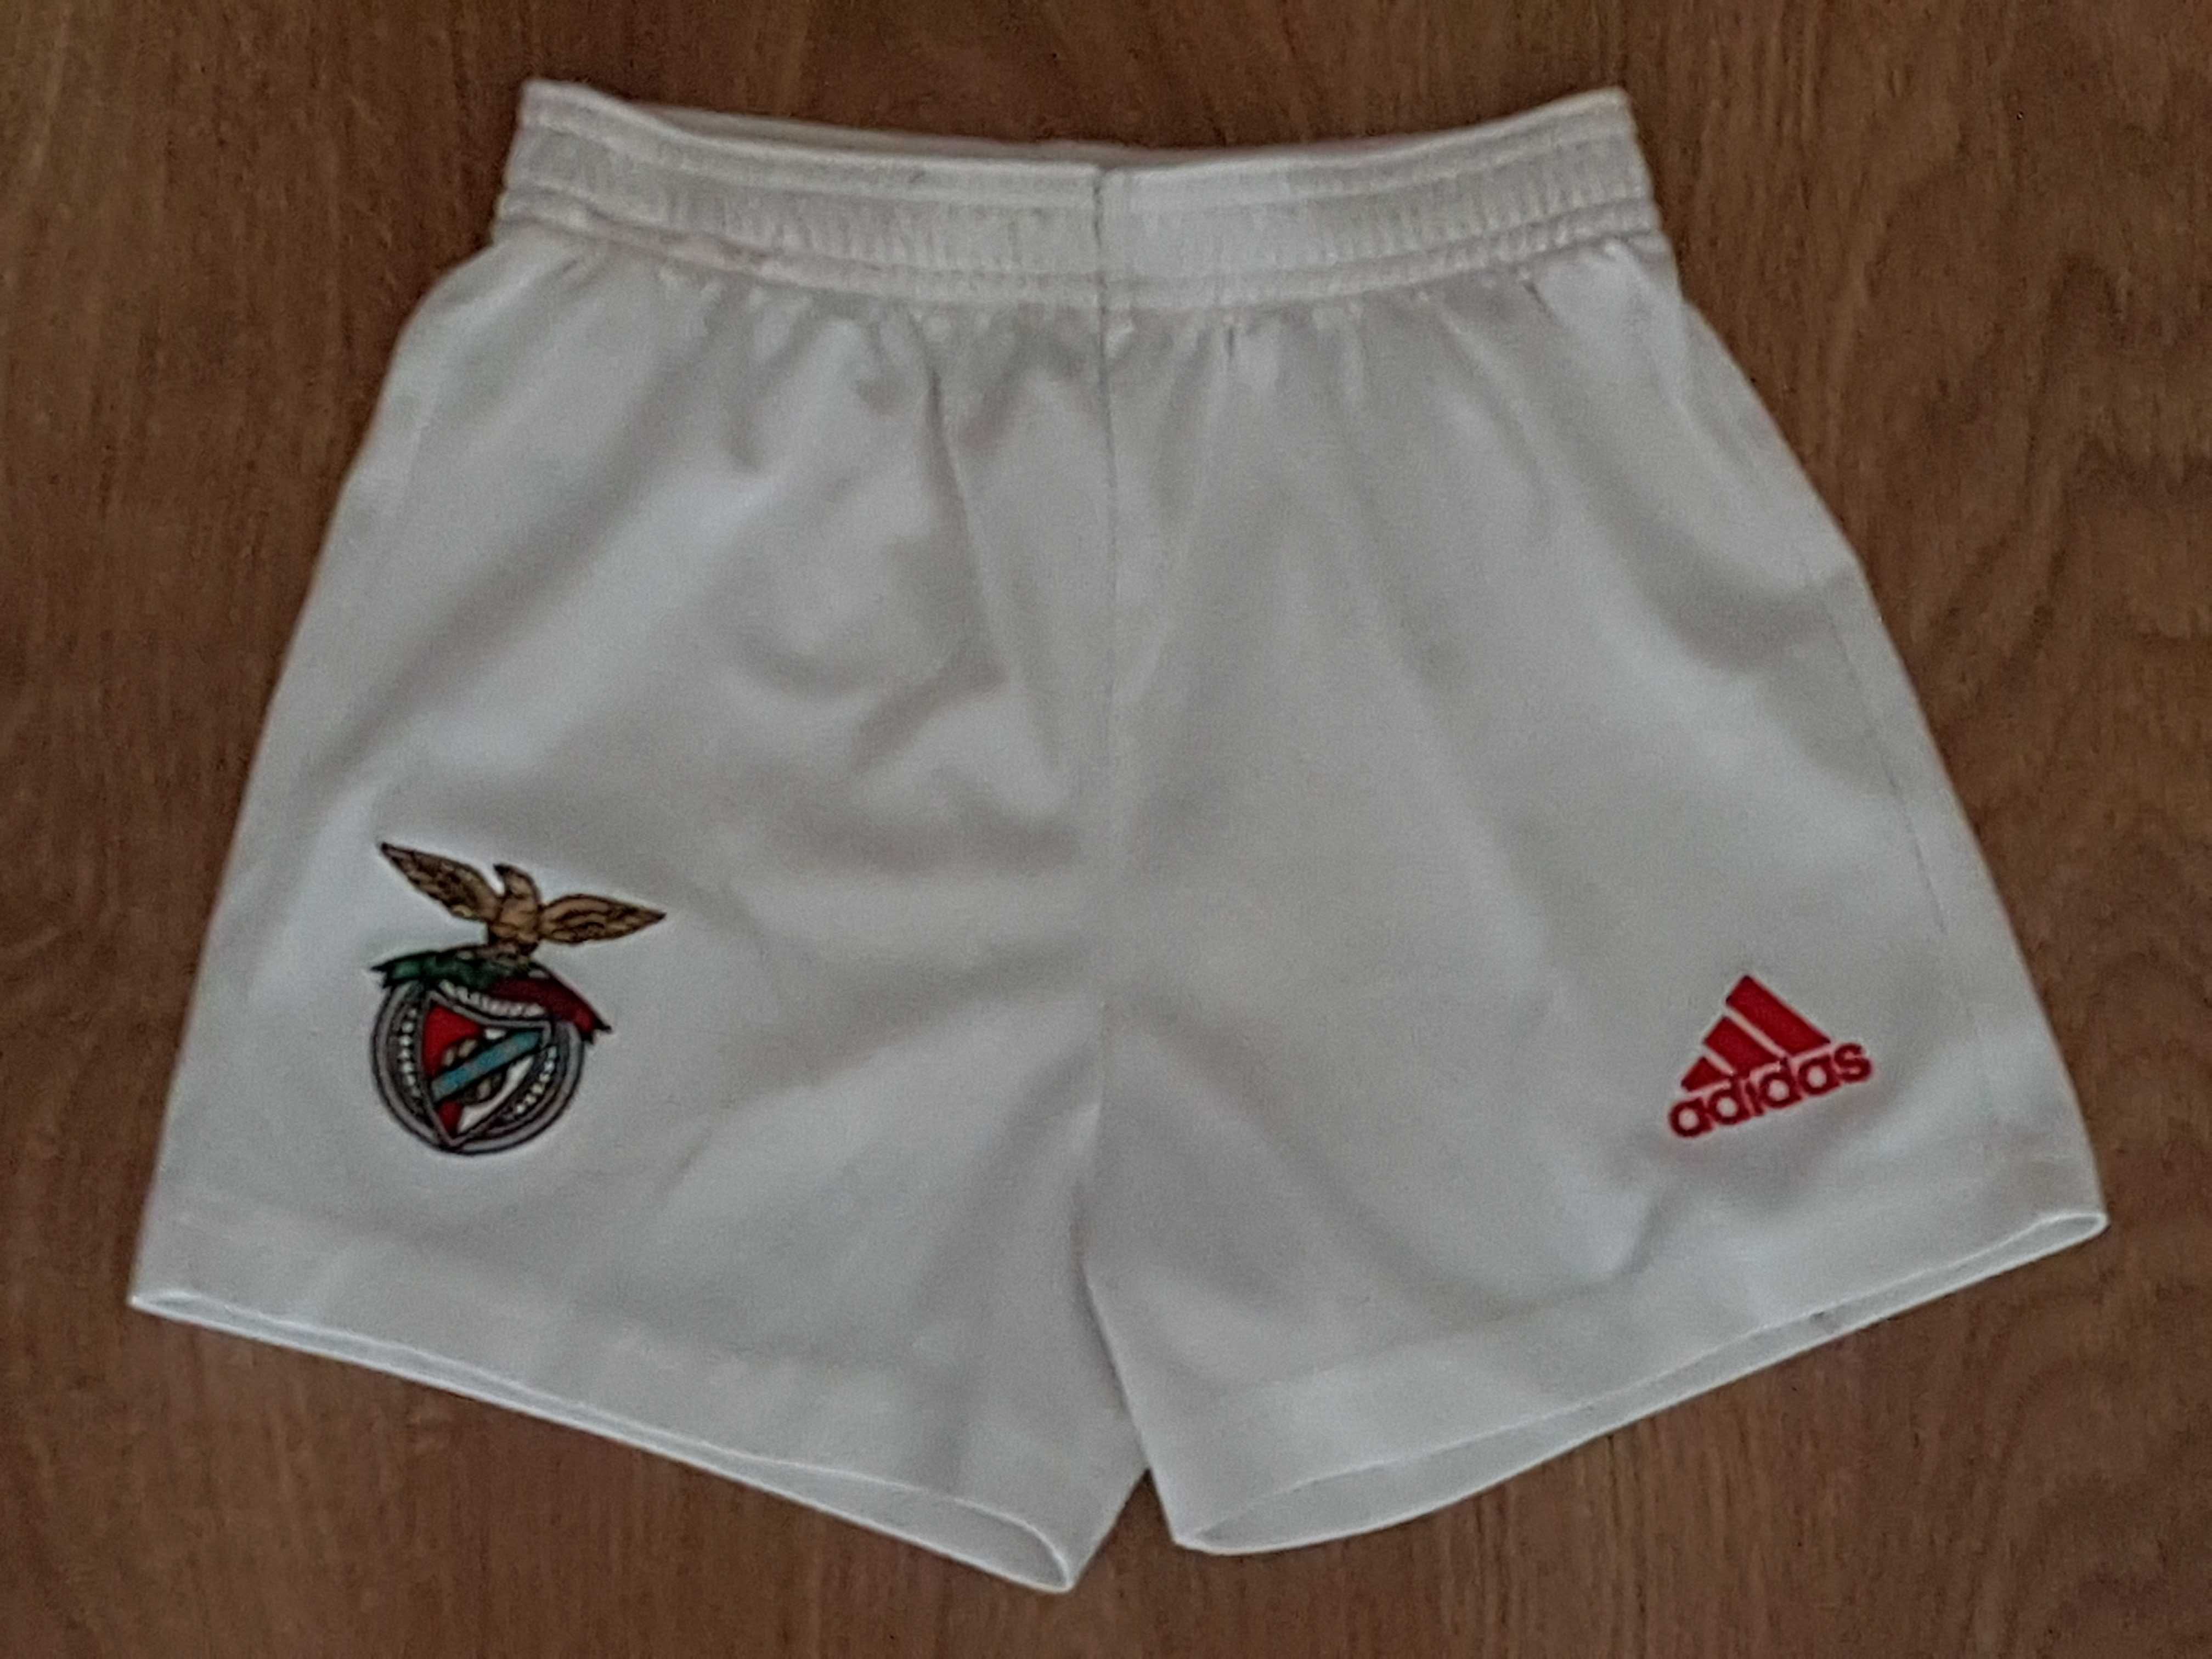 Calções Adidas SL Benfica - 5/6 Anos